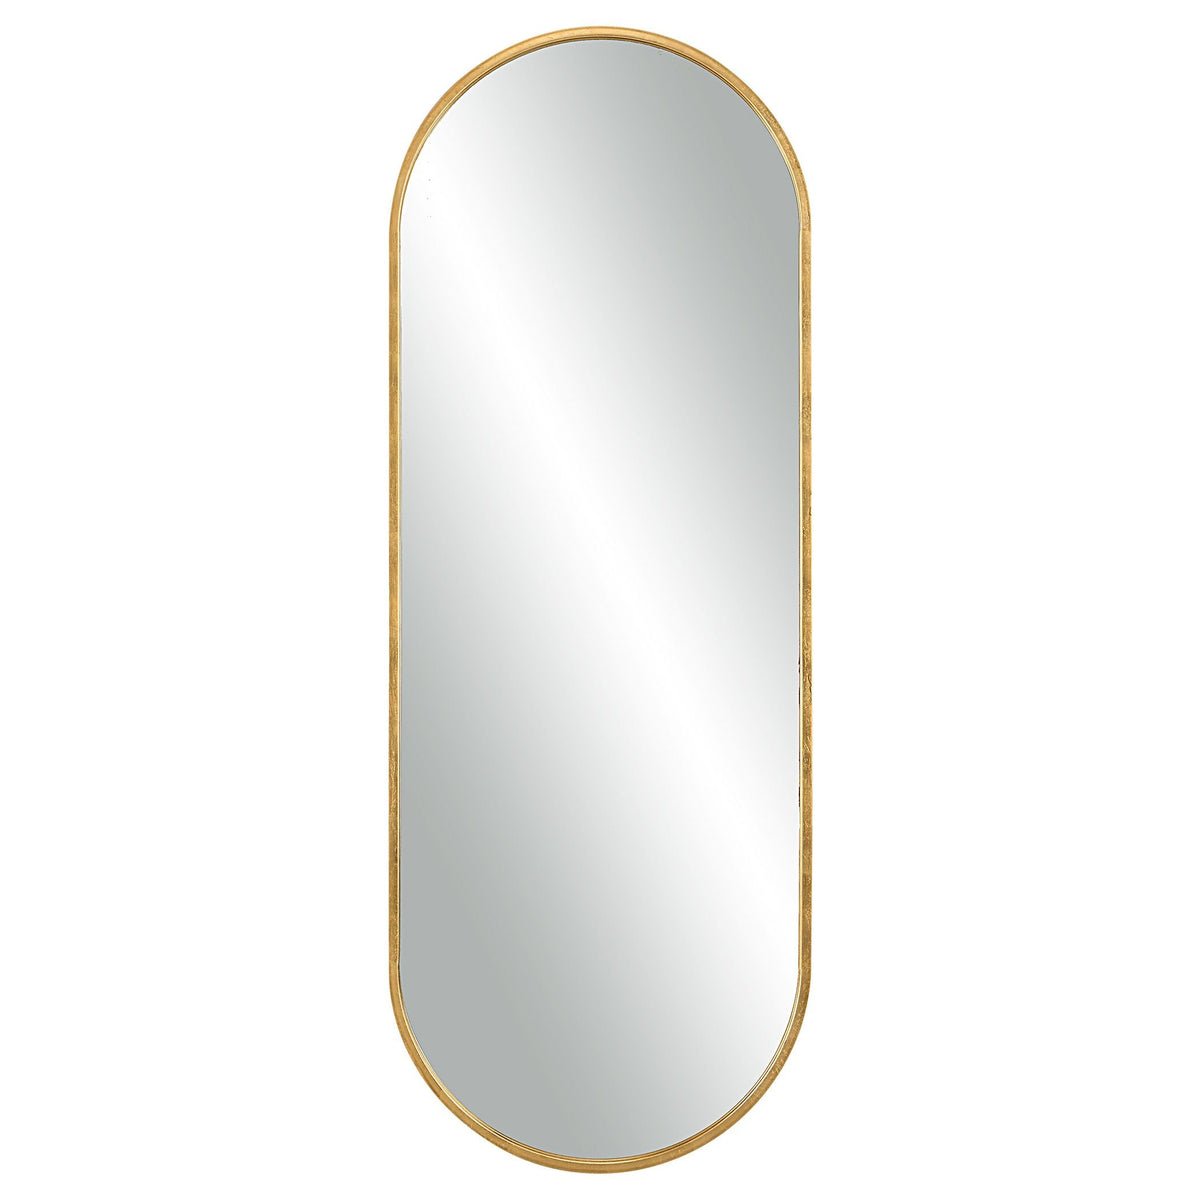 Uttermost Varina Tall Gold Mirror